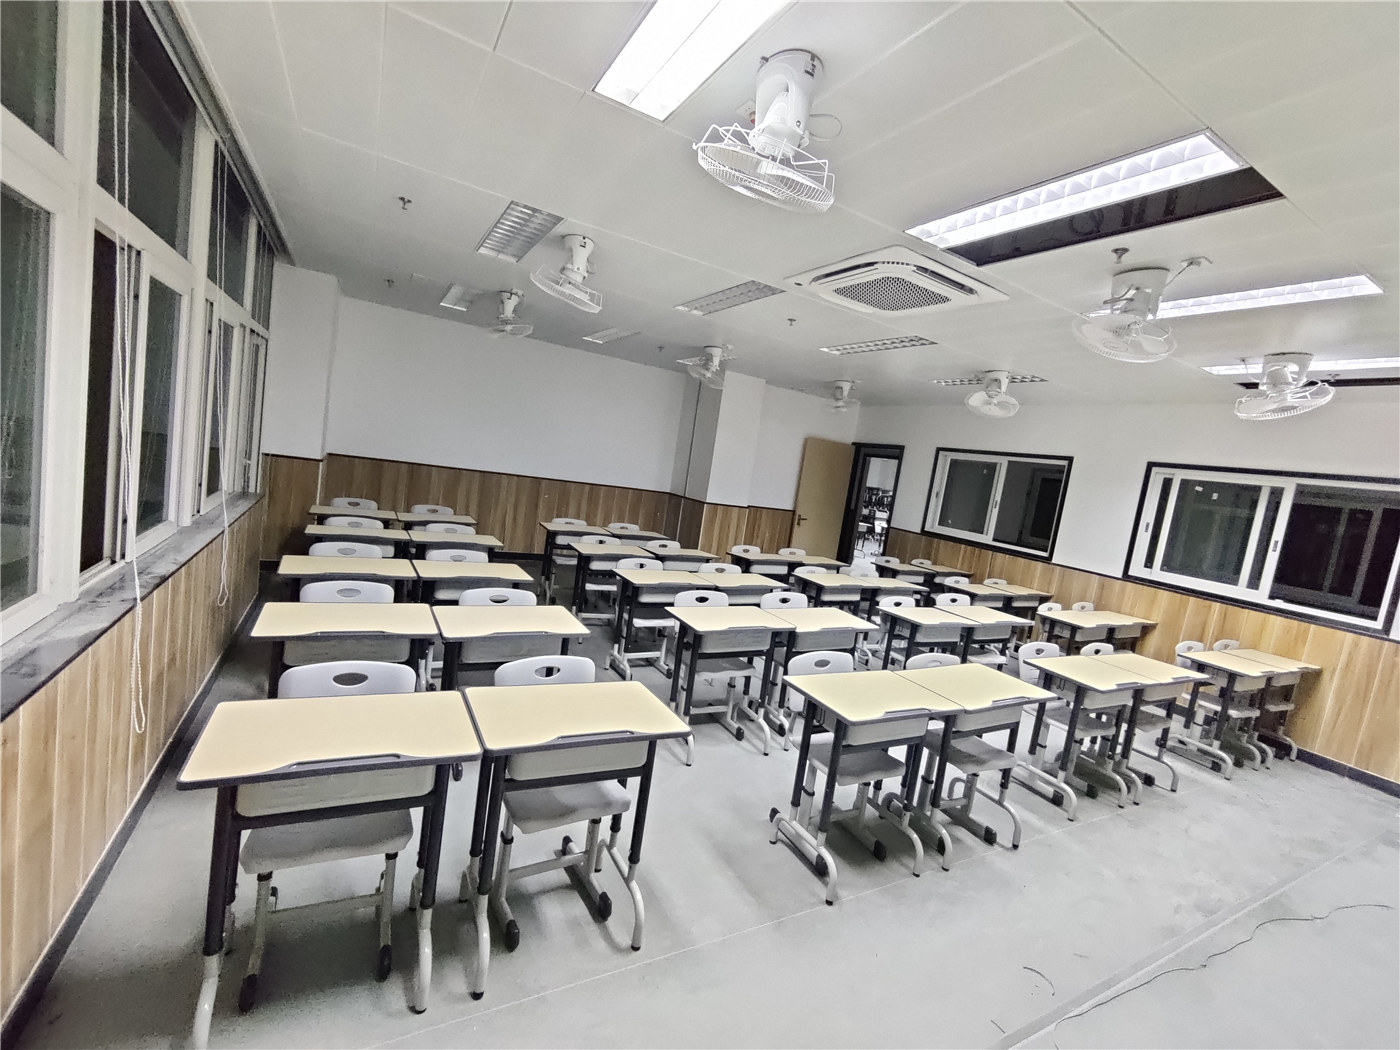 Käytä korkealaatuisia opiskelijapöytiä ja tuoleja luokkahuoneen tehokkuuden maksimoimiseksi101